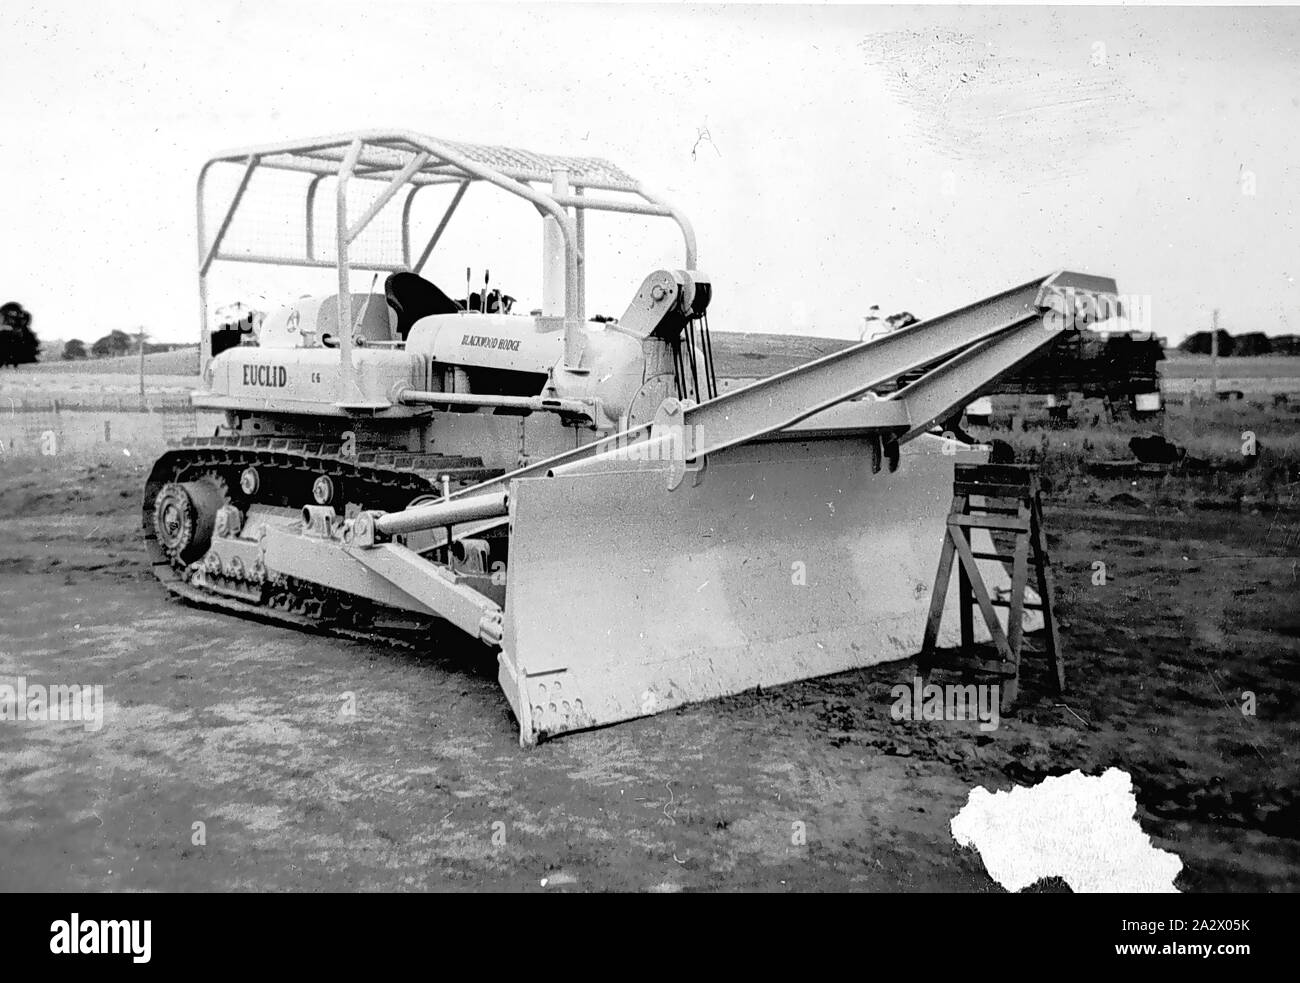 Négatif - Cobden, Victoria, vers 1955, un tracteur avec un bulldozer Euclid fabriqué ou commercialisé (pièce jointe ?) par Errey Engineering Banque D'Images